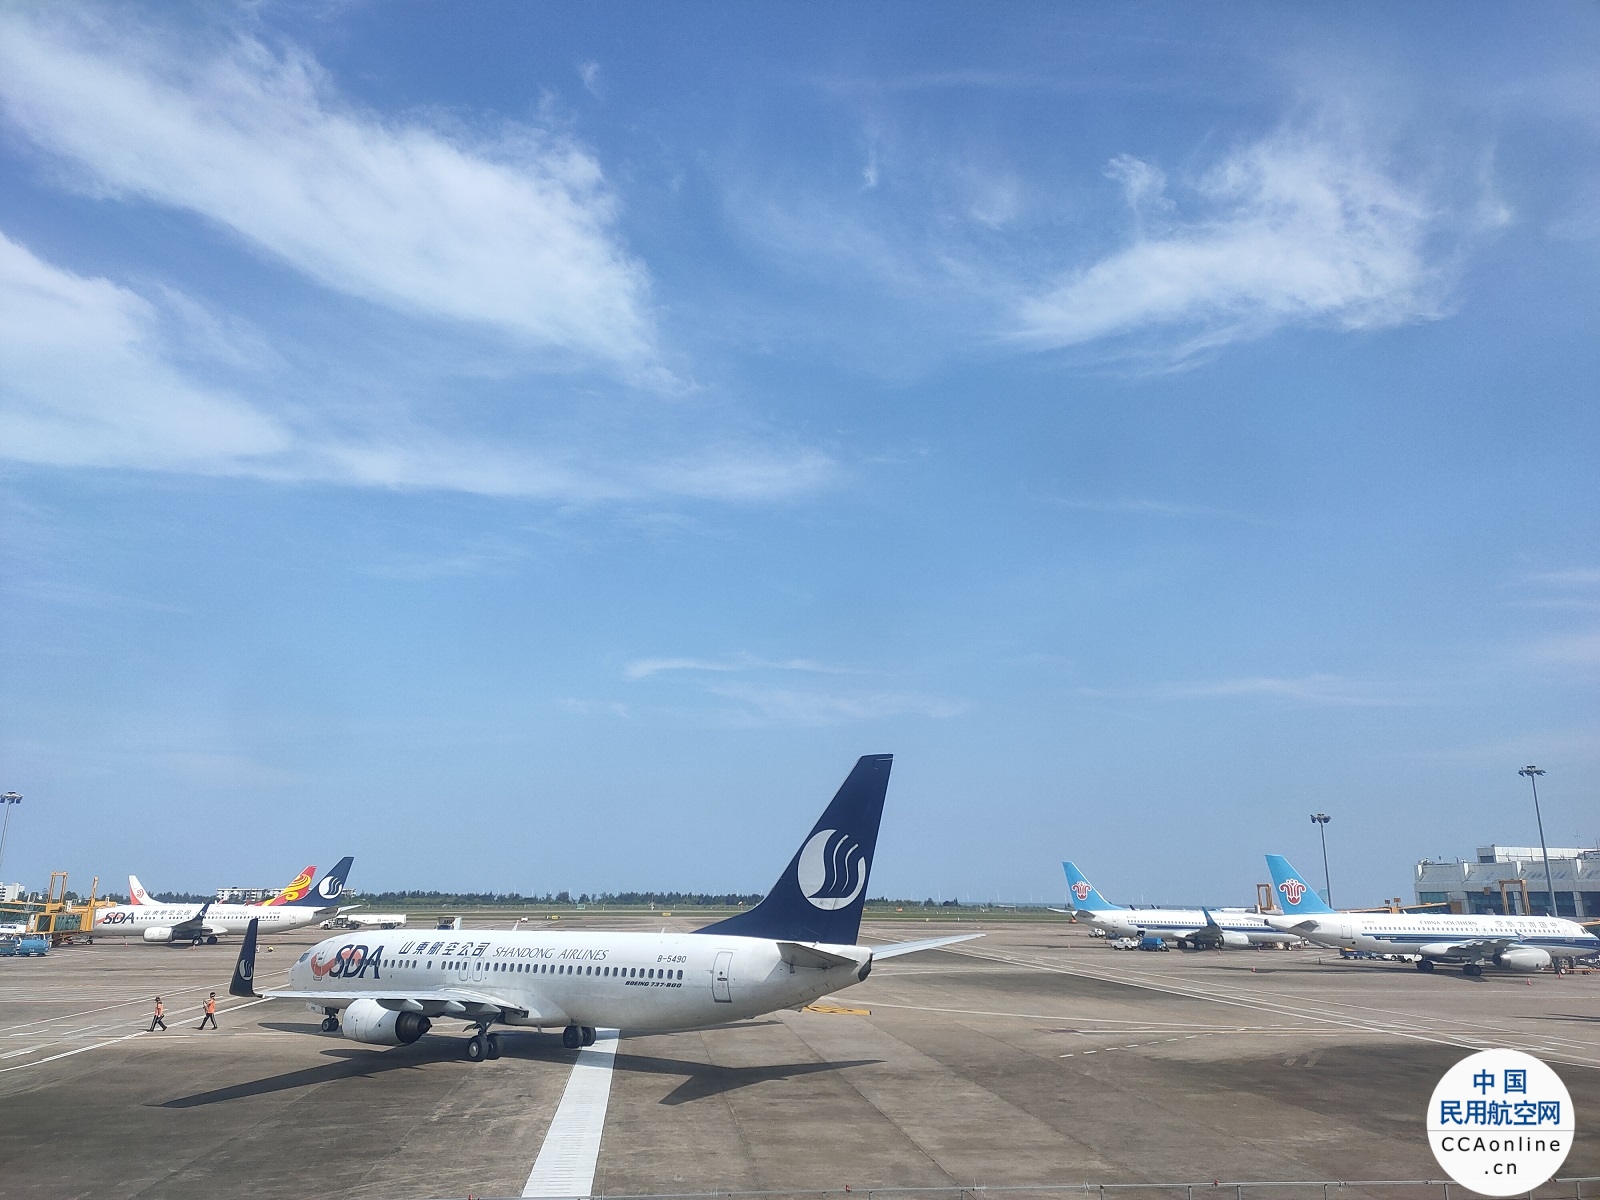 助力亚运出行 珠海机场与同程旅行联合推出杭州航线跨航司免费改签活动